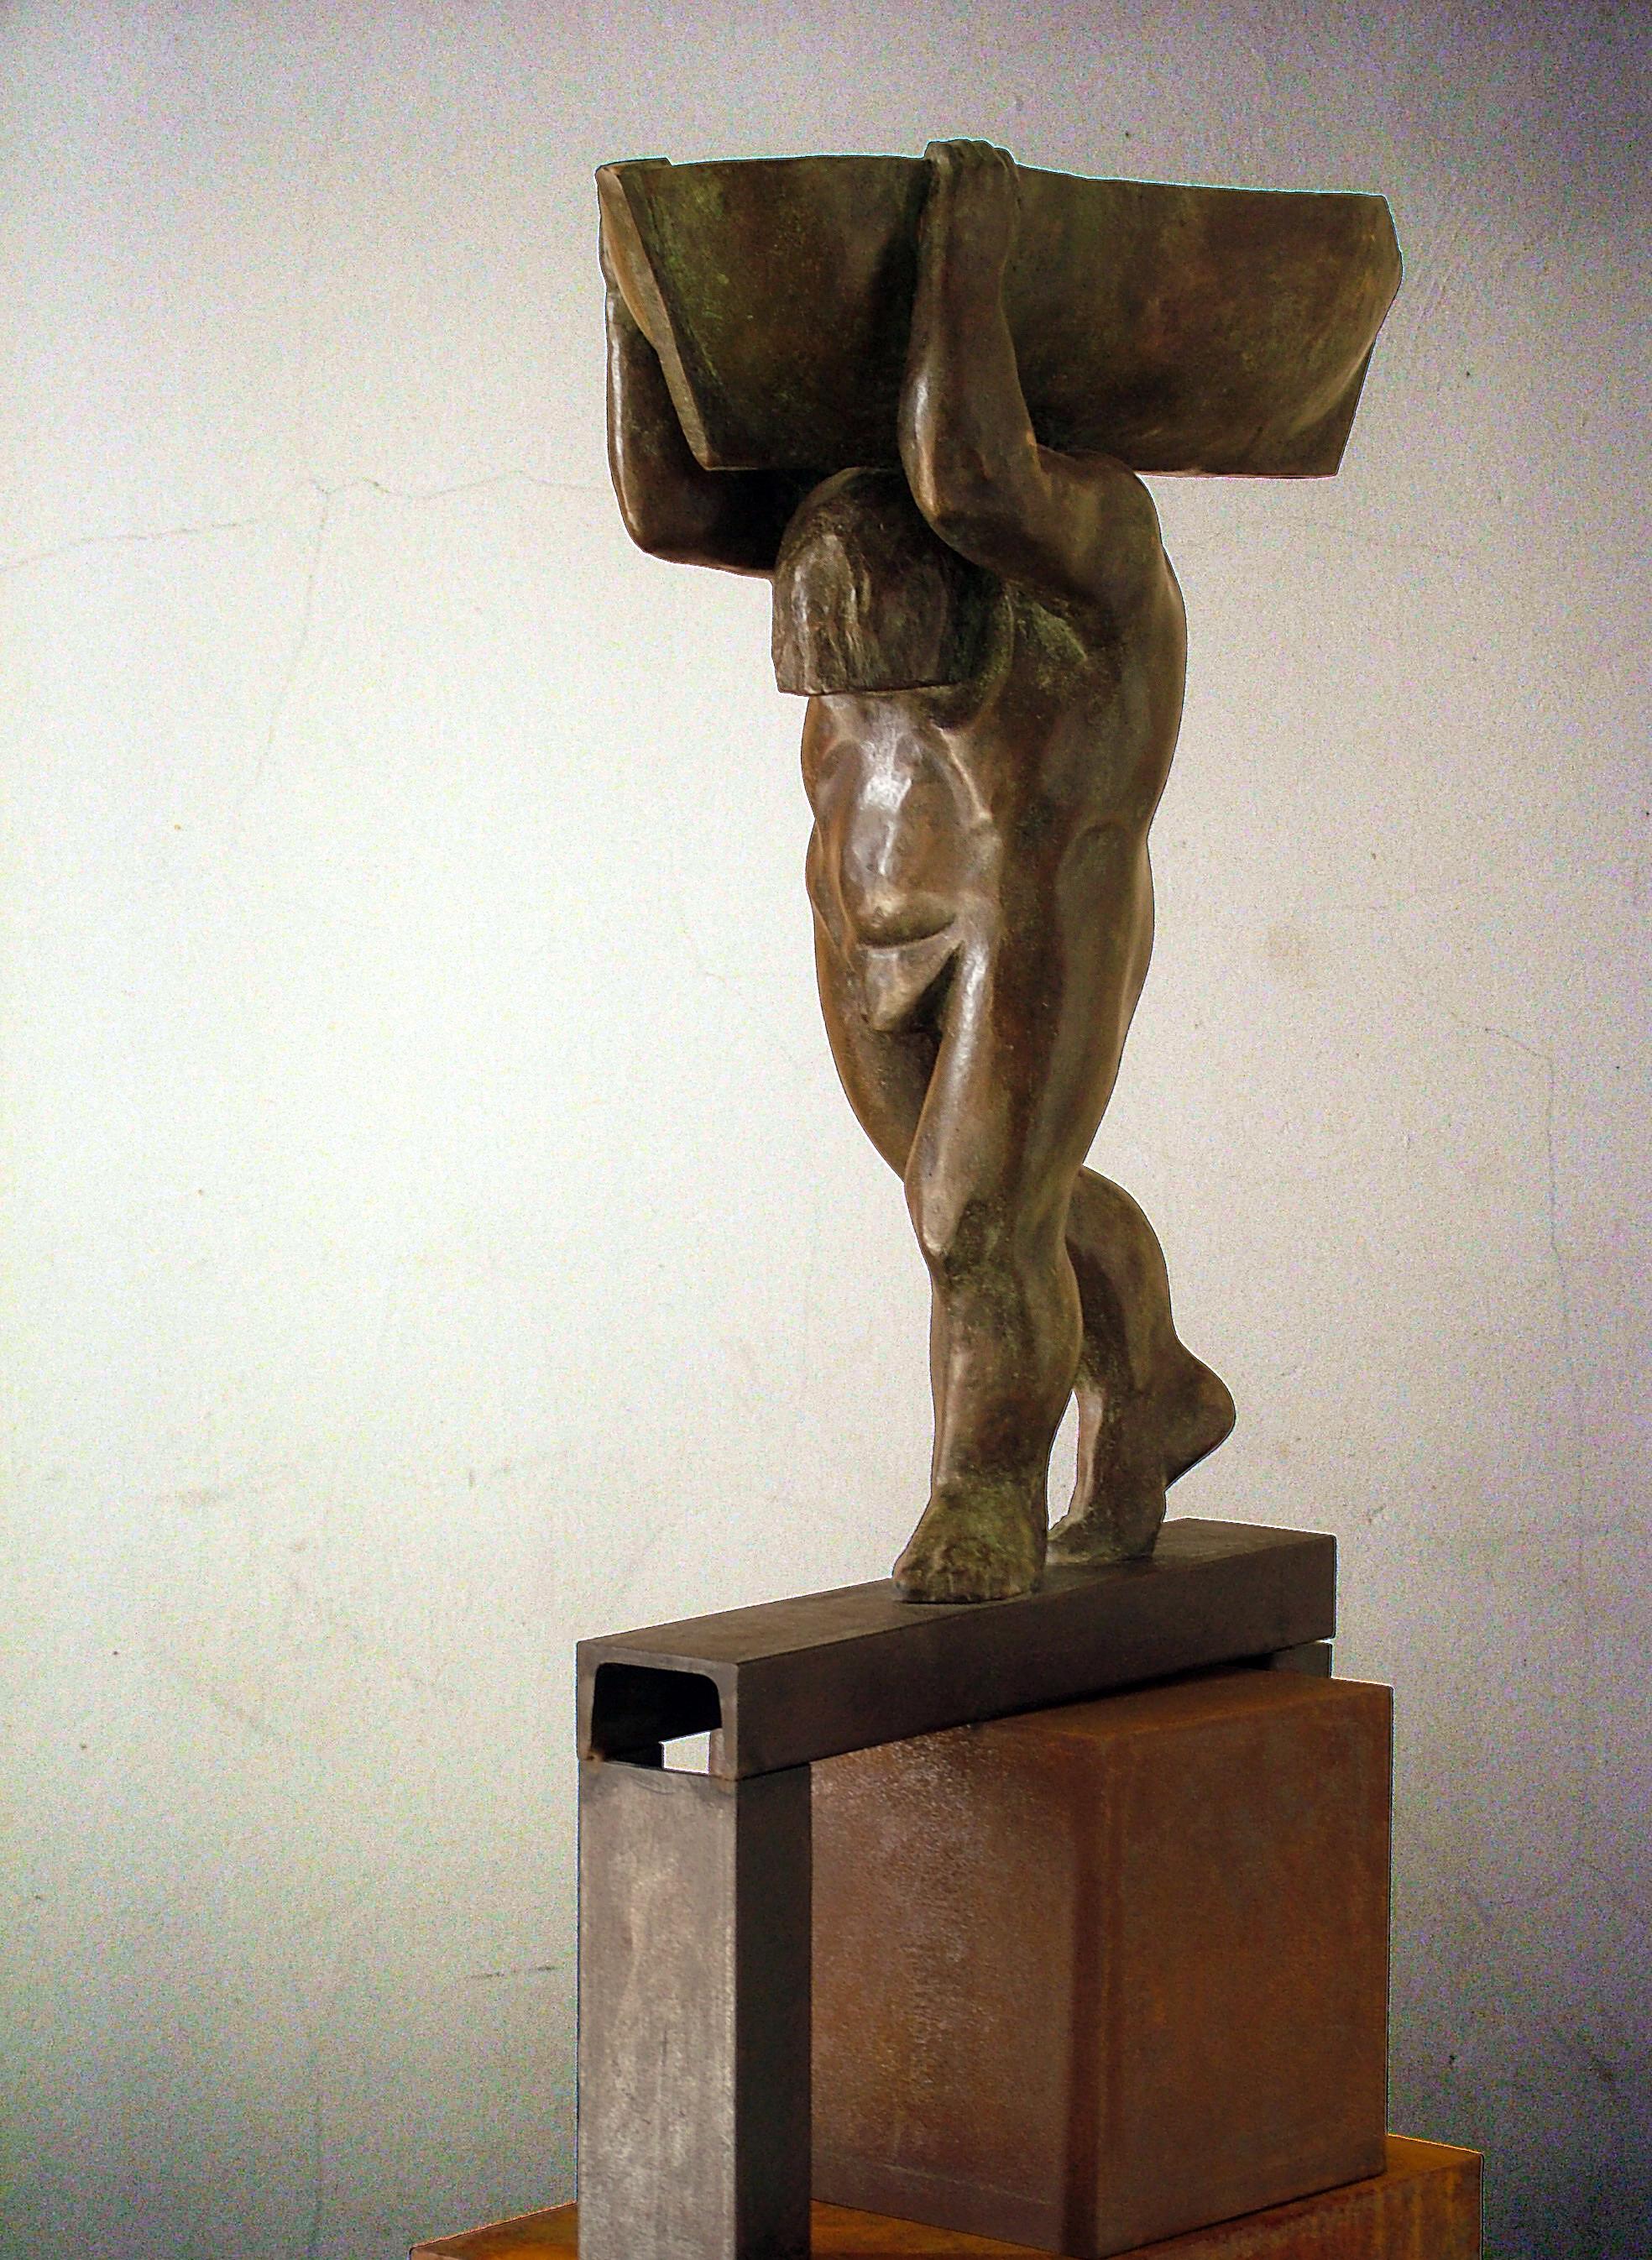 Sculpture de l'artiste espagnol AMANCIO GONZALEZ
Artistics bien connu pour ses œuvres de grand format dans la rue.
Le fer et le bronze. 7 exemplaires
AMANCIO Gonzalez ( Leon 1965 )

Amancio González est un sculpteur de Léon et un artiste de renommée